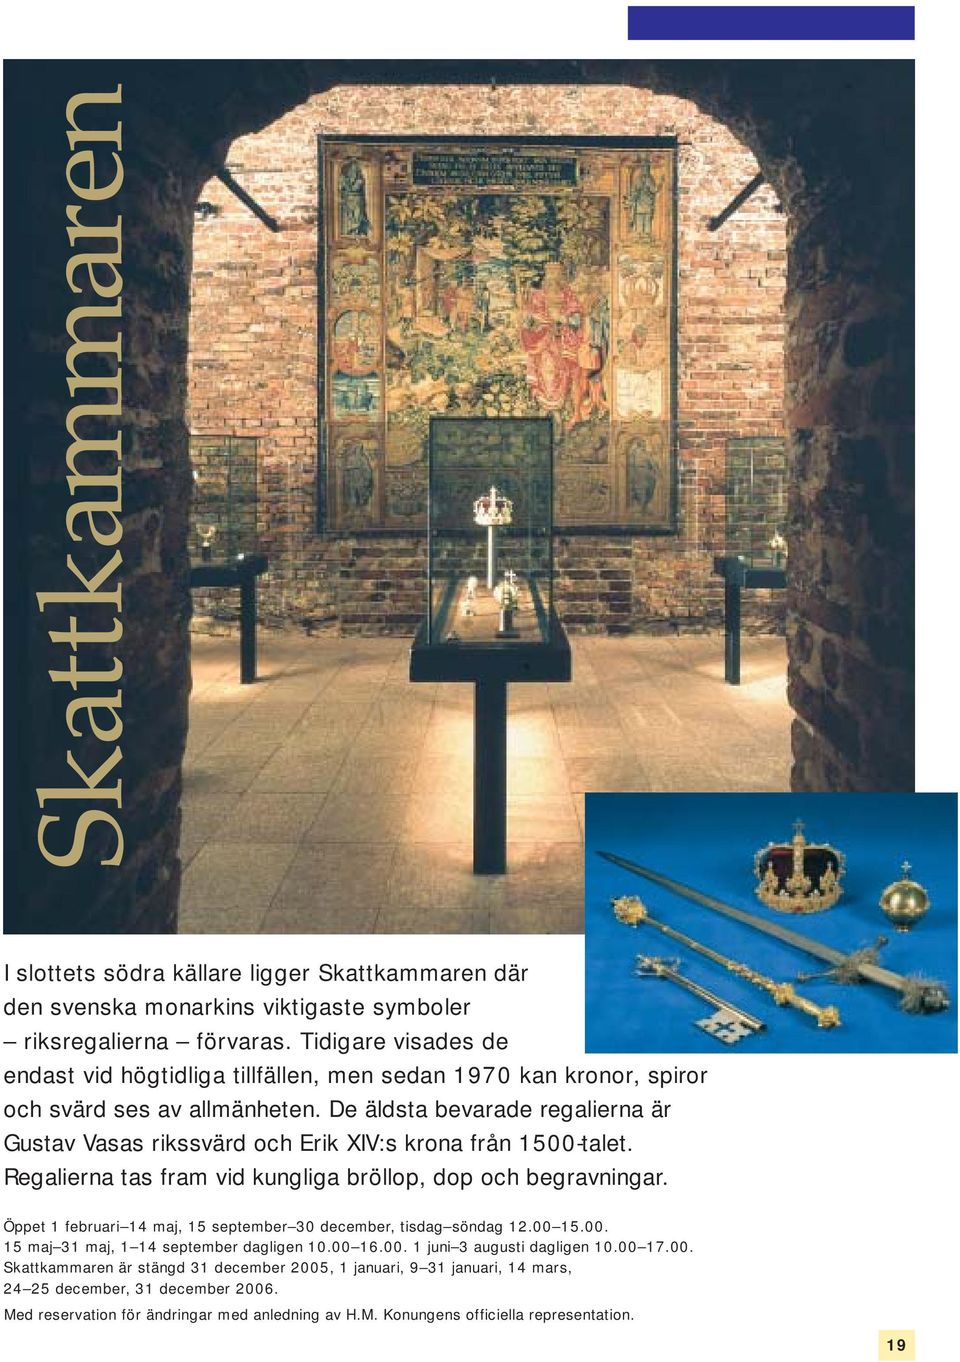 De äldsta bevarade regalierna är Gustav Vasas rikssvärd och Erik XIV:s krona från 1500-talet. Regalierna tas fram vid kungliga bröllop, dop och begravningar.